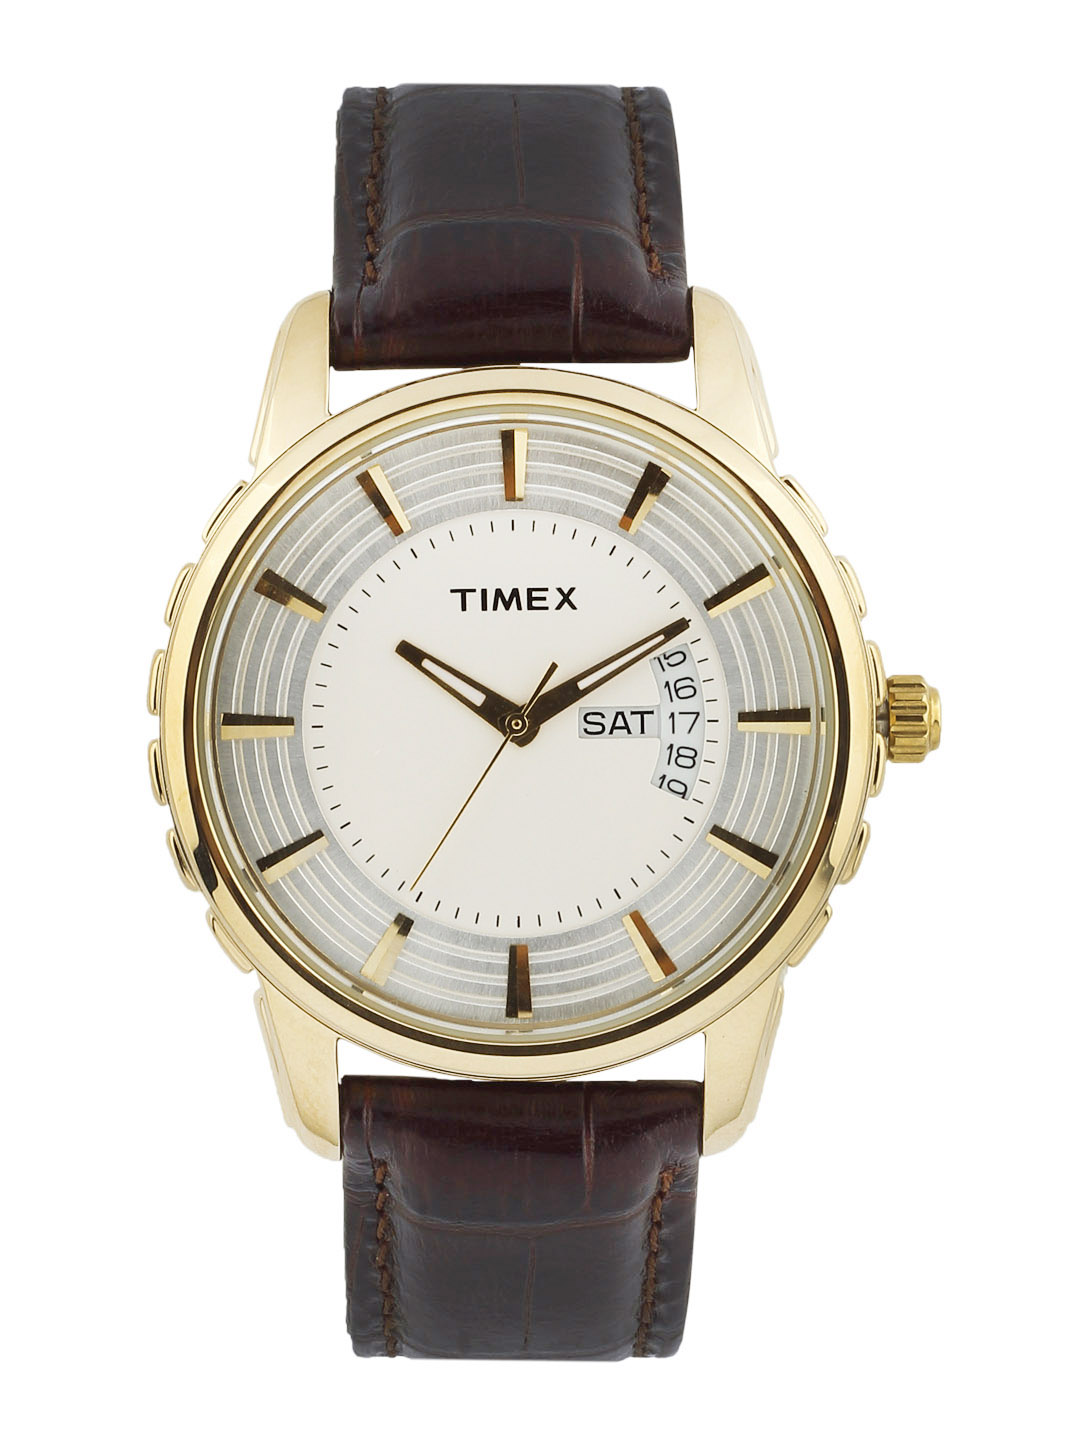 В» Watches В» Classic Watches В» Timex Watches В» Timex Mens